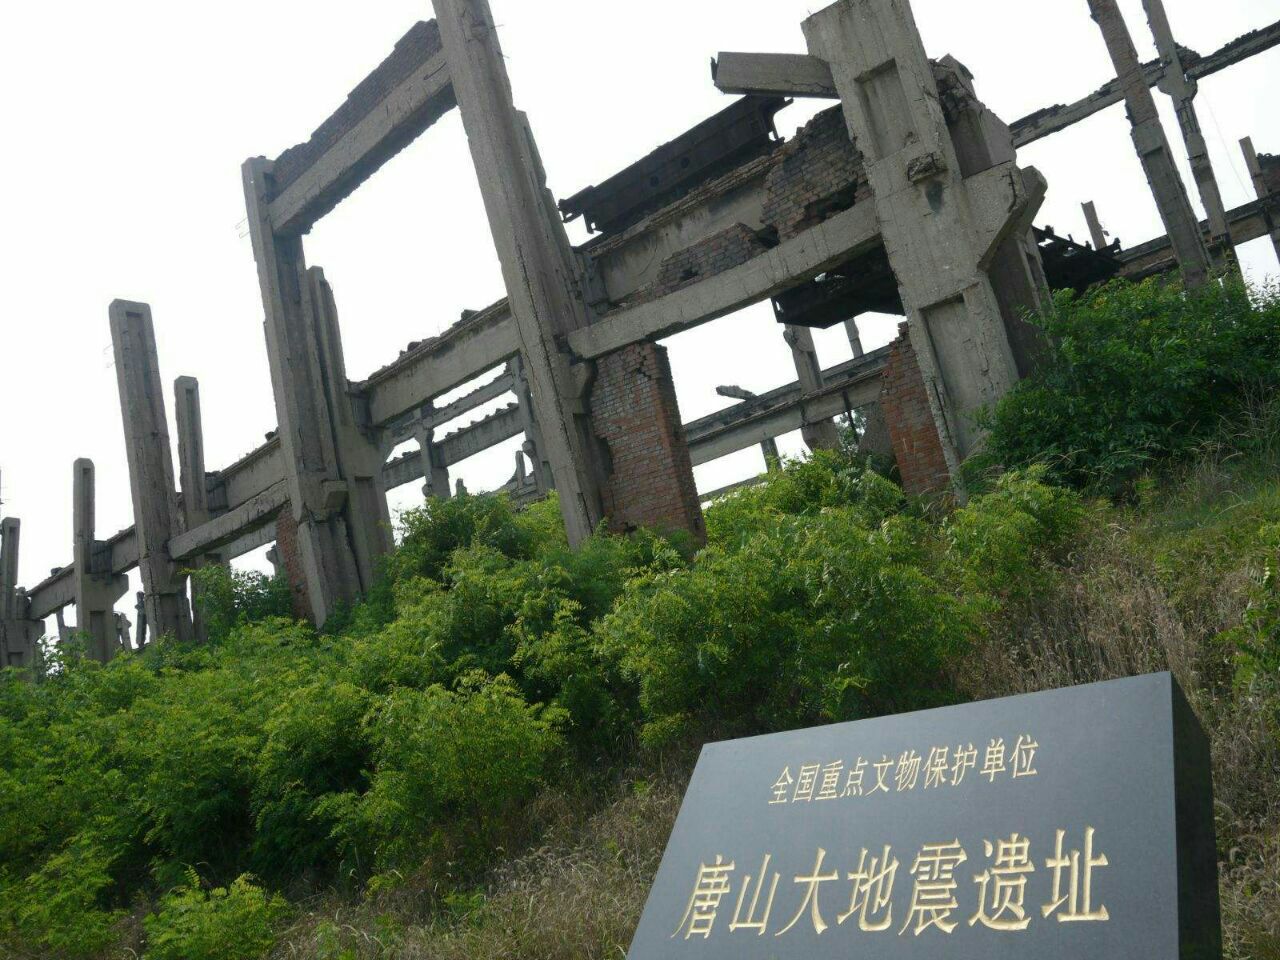 唐山地震遗址纪念公园于2008年4月开始兴建2008年7月初步建成开放总